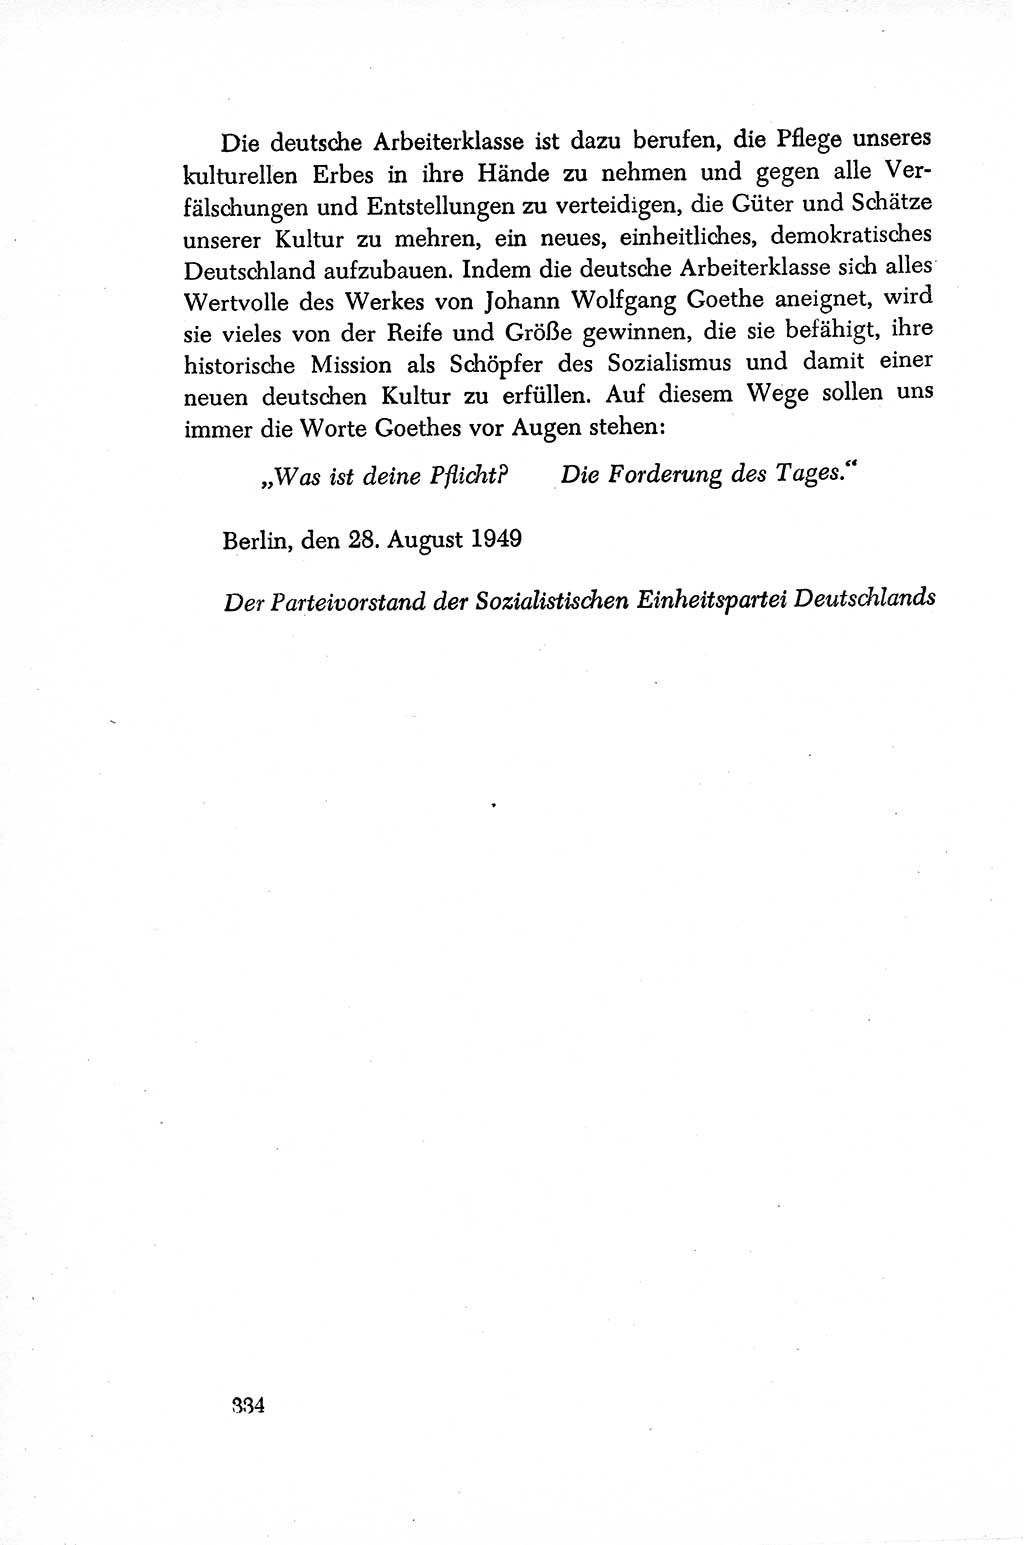 Dokumente der Sozialistischen Einheitspartei Deutschlands (SED) [Sowjetische Besatzungszone (SBZ) Deutschlands/Deutsche Demokratische Republik (DDR)] 1948-1950, Seite 334 (Dok. SED SBZ Dtl. DDR 1948-1950, S. 334)